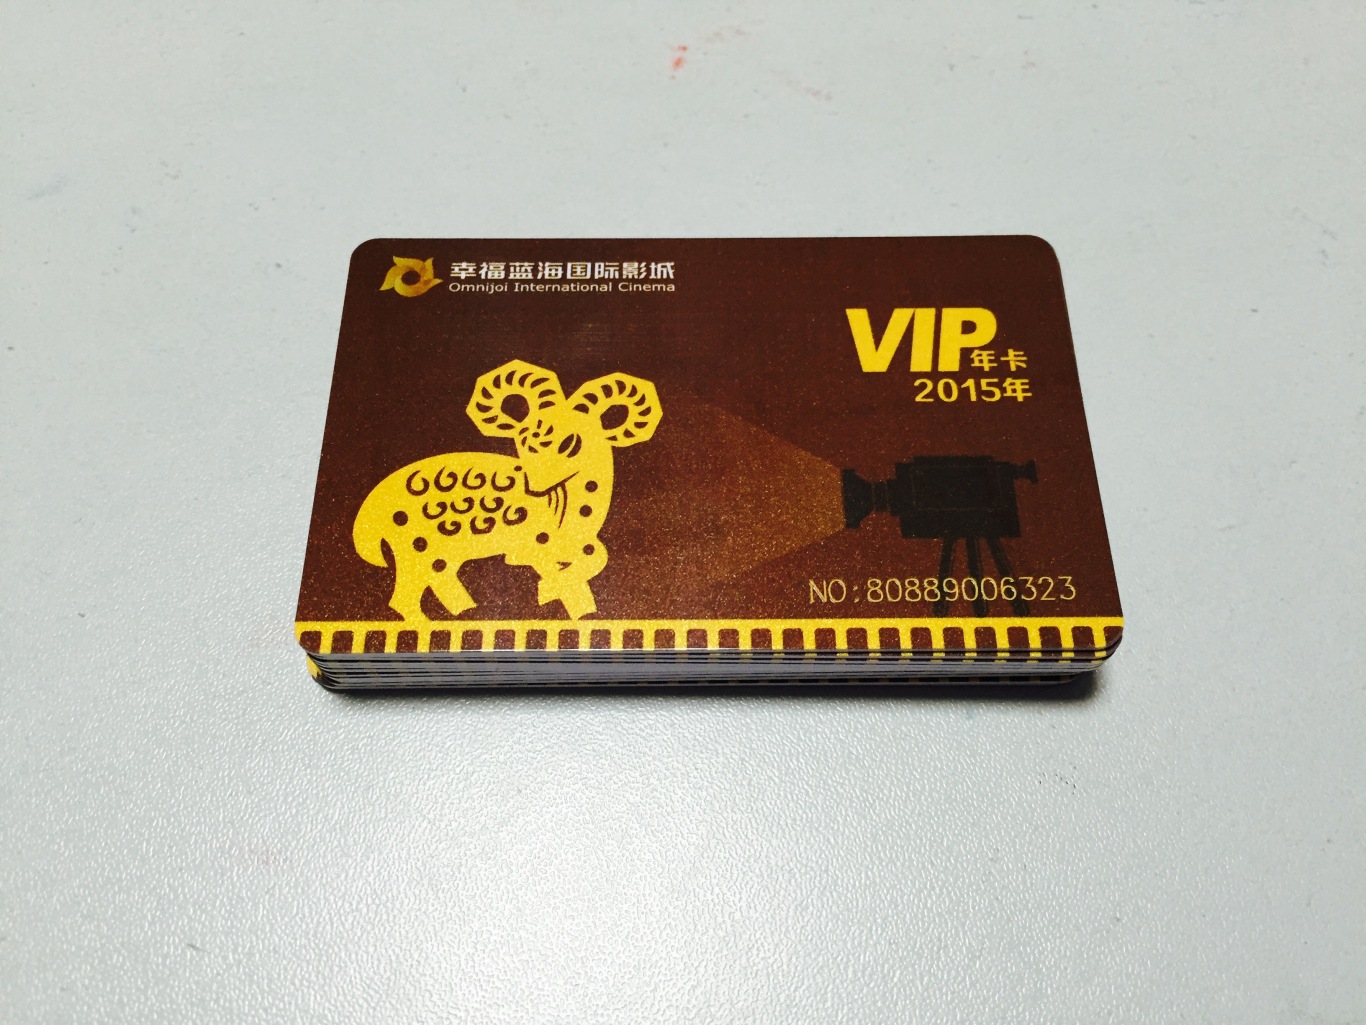 幸福蓝海国际级影城VIP年卡设计图3